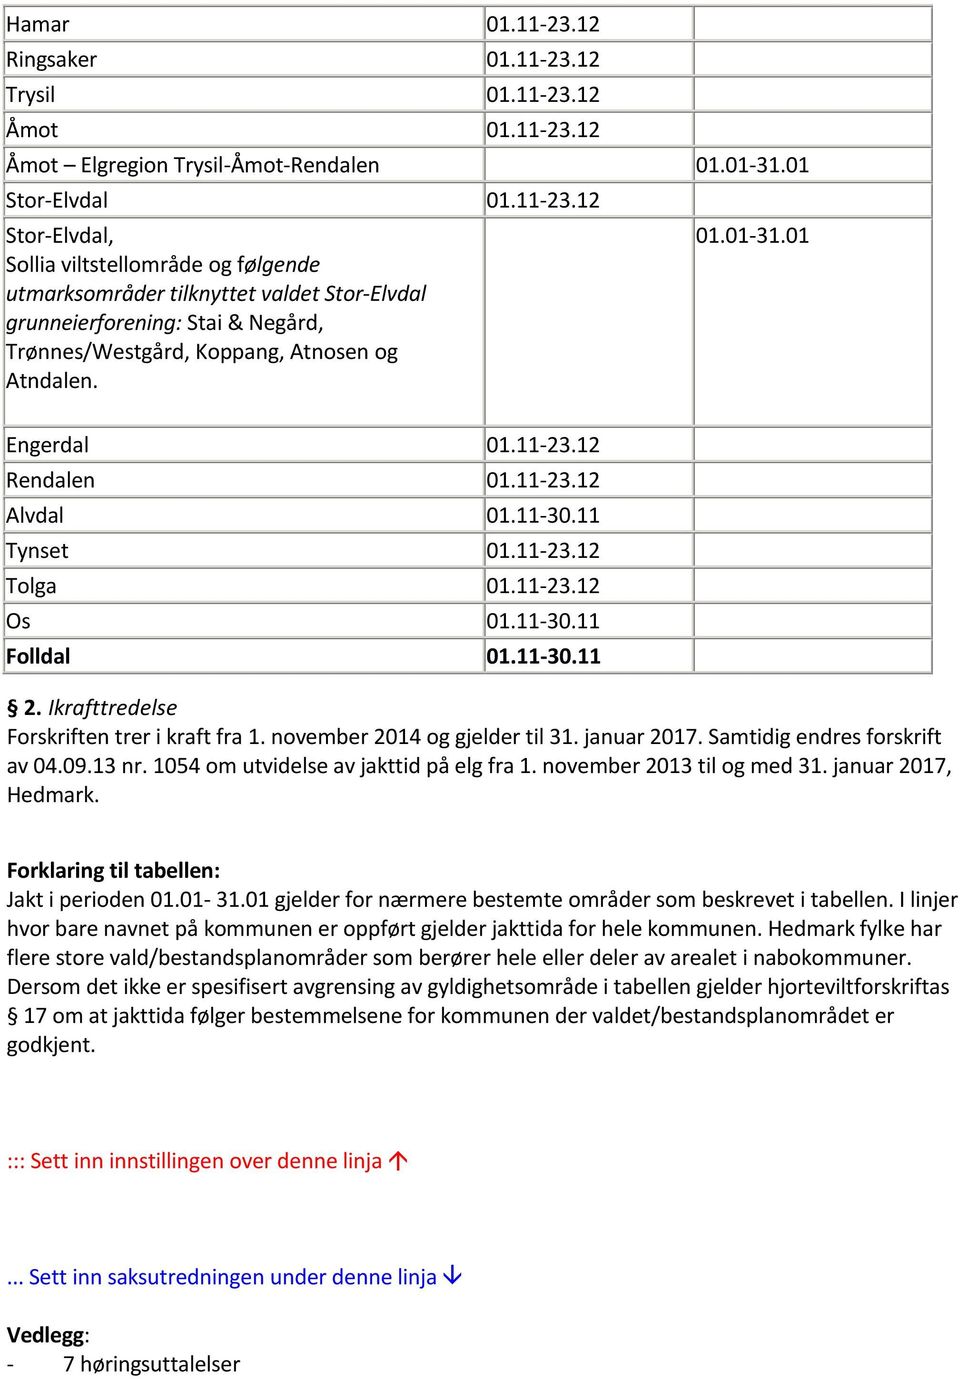 november 2014 og gjelder til 31. januar 2017. Samtidig endres forskrift av 04.09.13 nr. 1054 om utvidelse av jakttid på elg fra 1. november 2013 til og med 31. januar 2017, Hedmark.